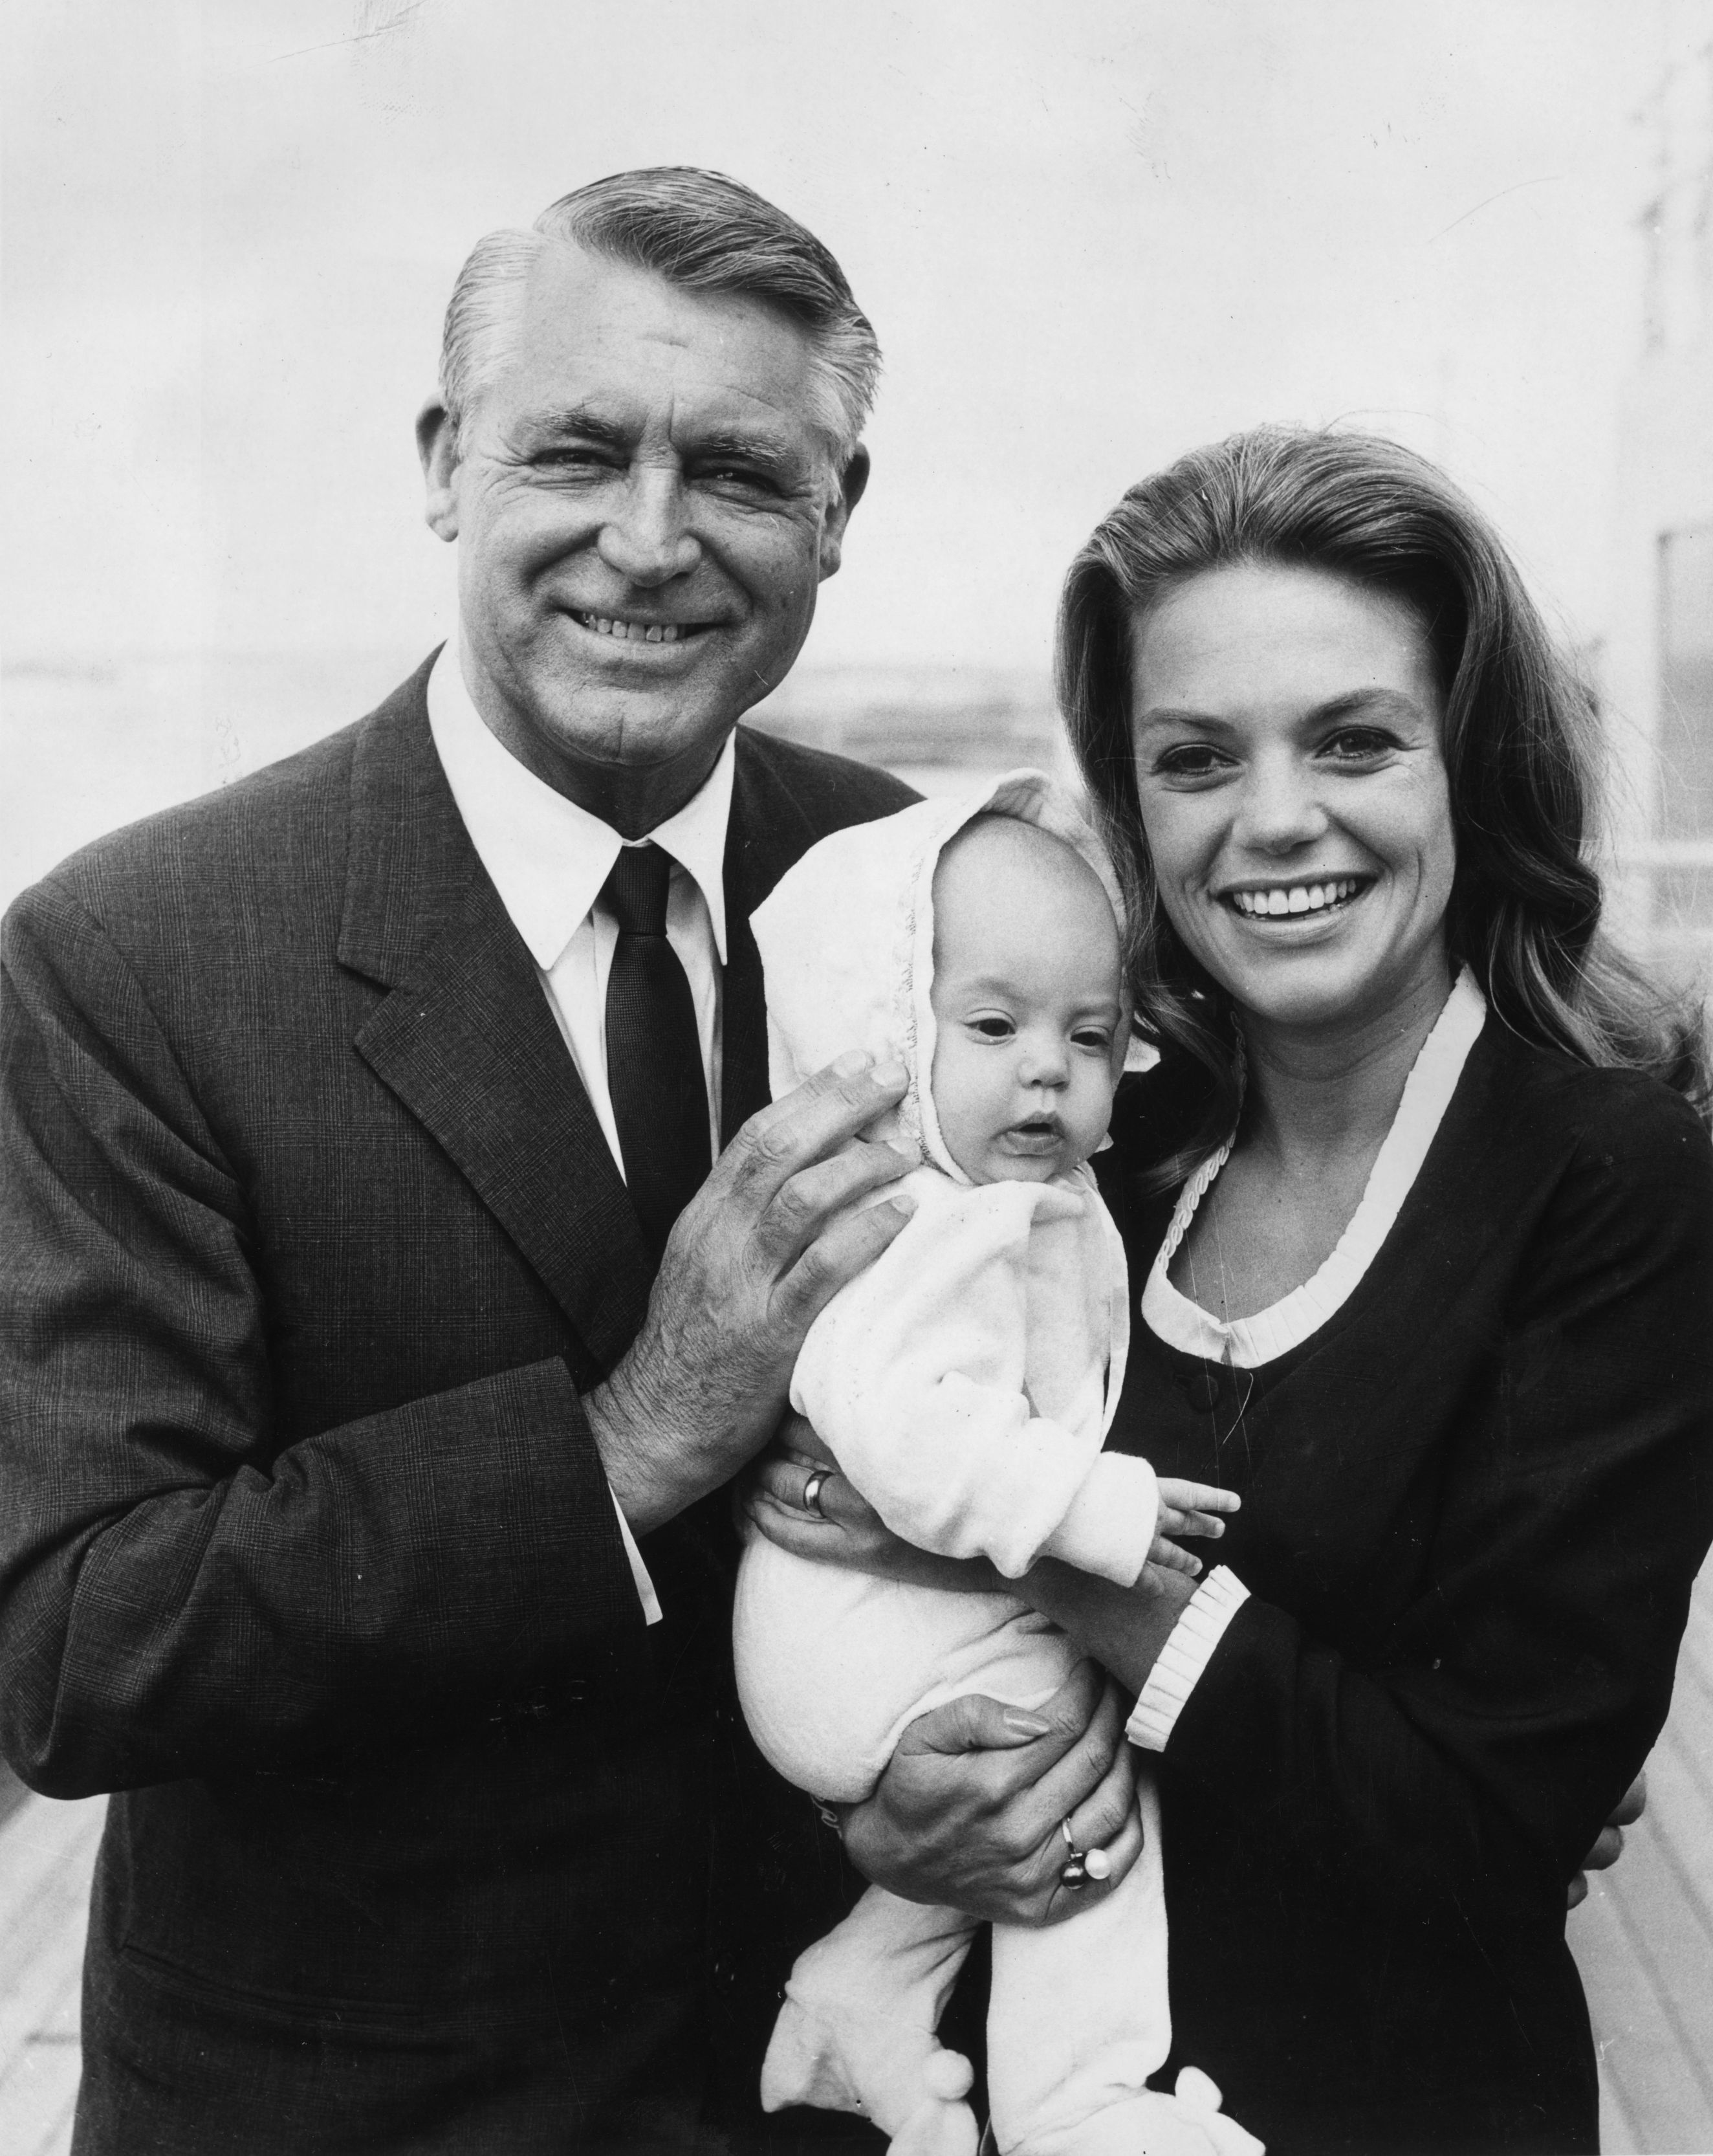 1966 г. Кари Грант и Даян Кенън. Едни от най-уважаваните холивудски артисти, които се сдобиват с дъщеря им Дженифър през тази година. Една от най-обичаните двойки.